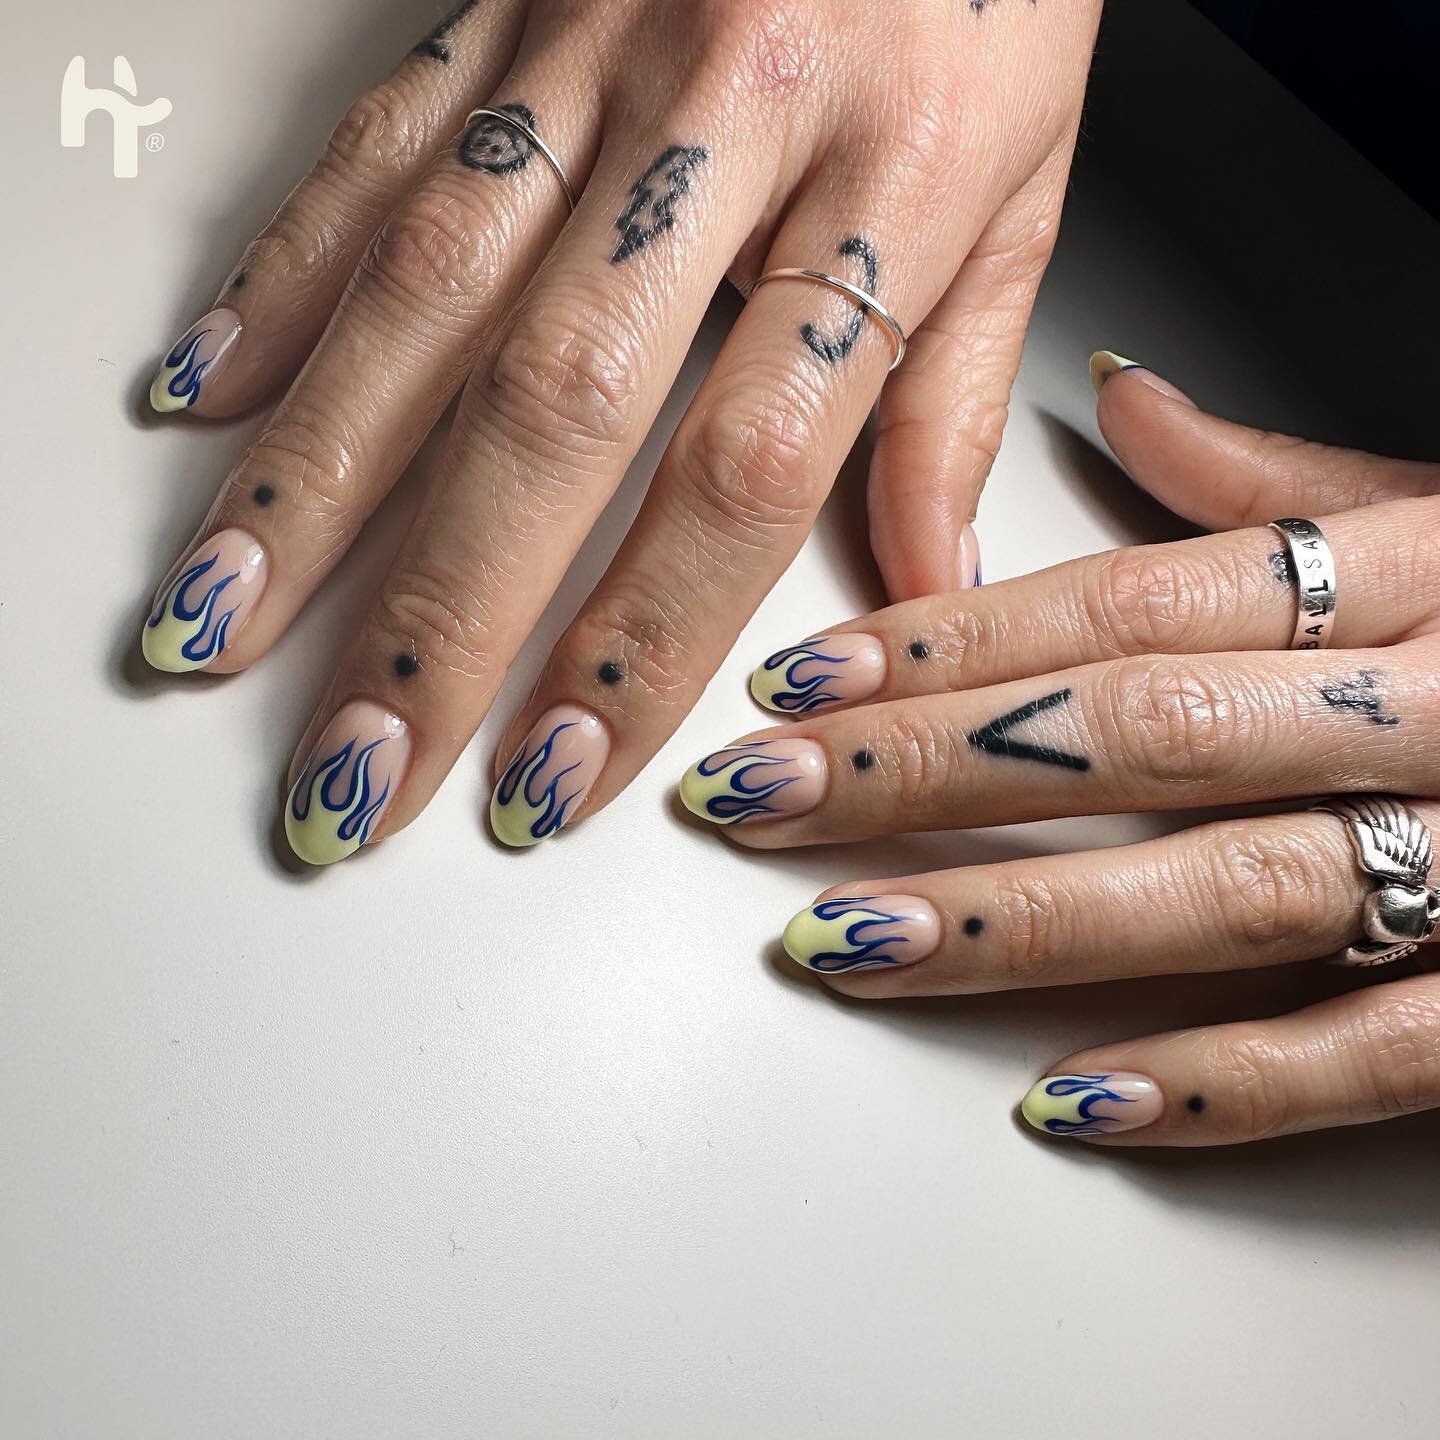 Biab with flames🔥 for @eatmieliesweirdillustration #nails #nailart #nailartstudioutrecht #utrecht #hotspotutrecht #biab #biabutrecht